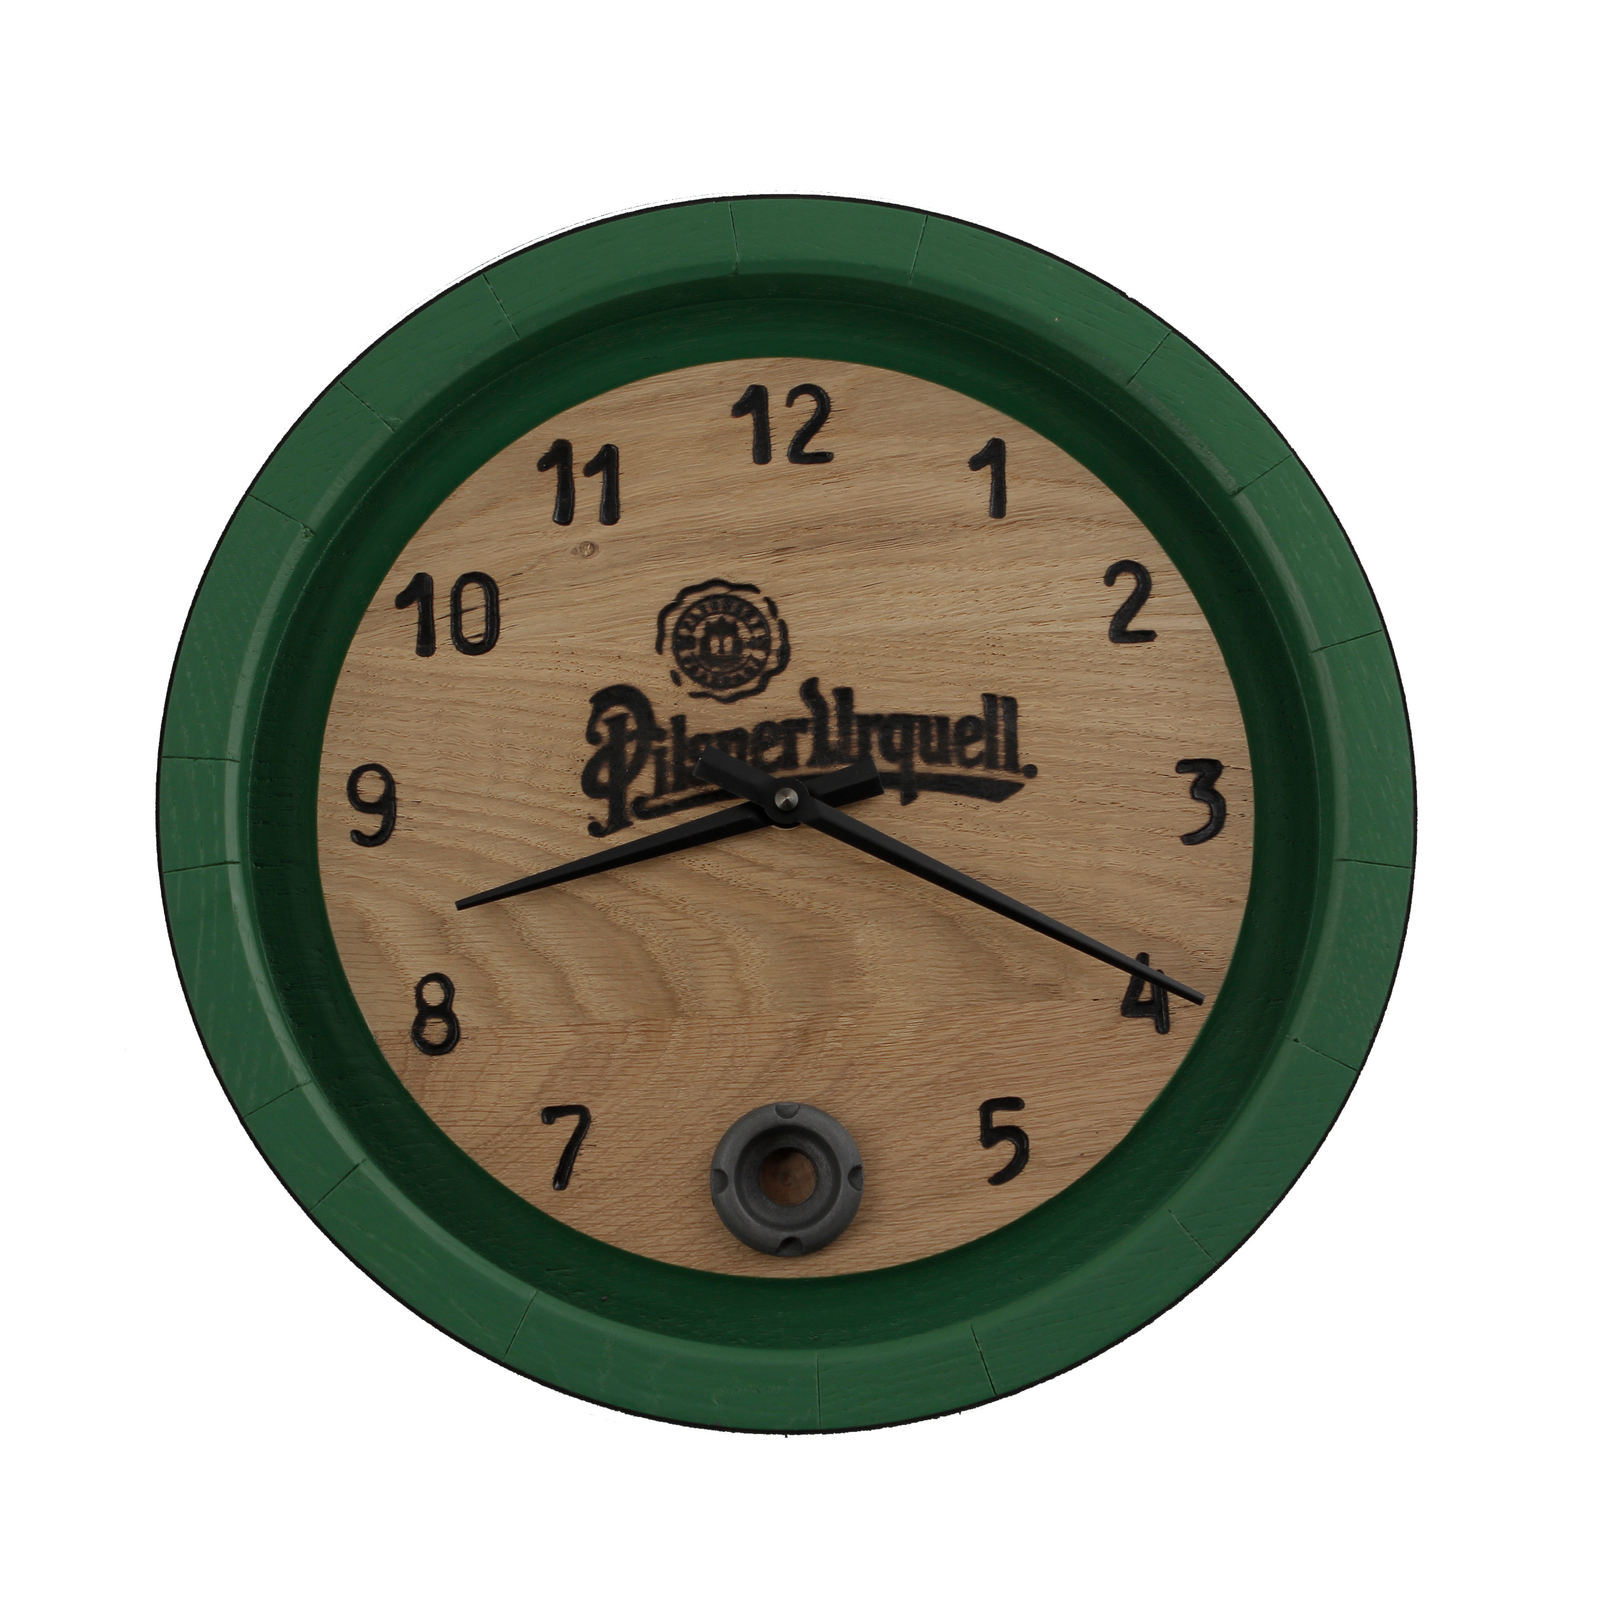 Green Pilsner Urquell Clock